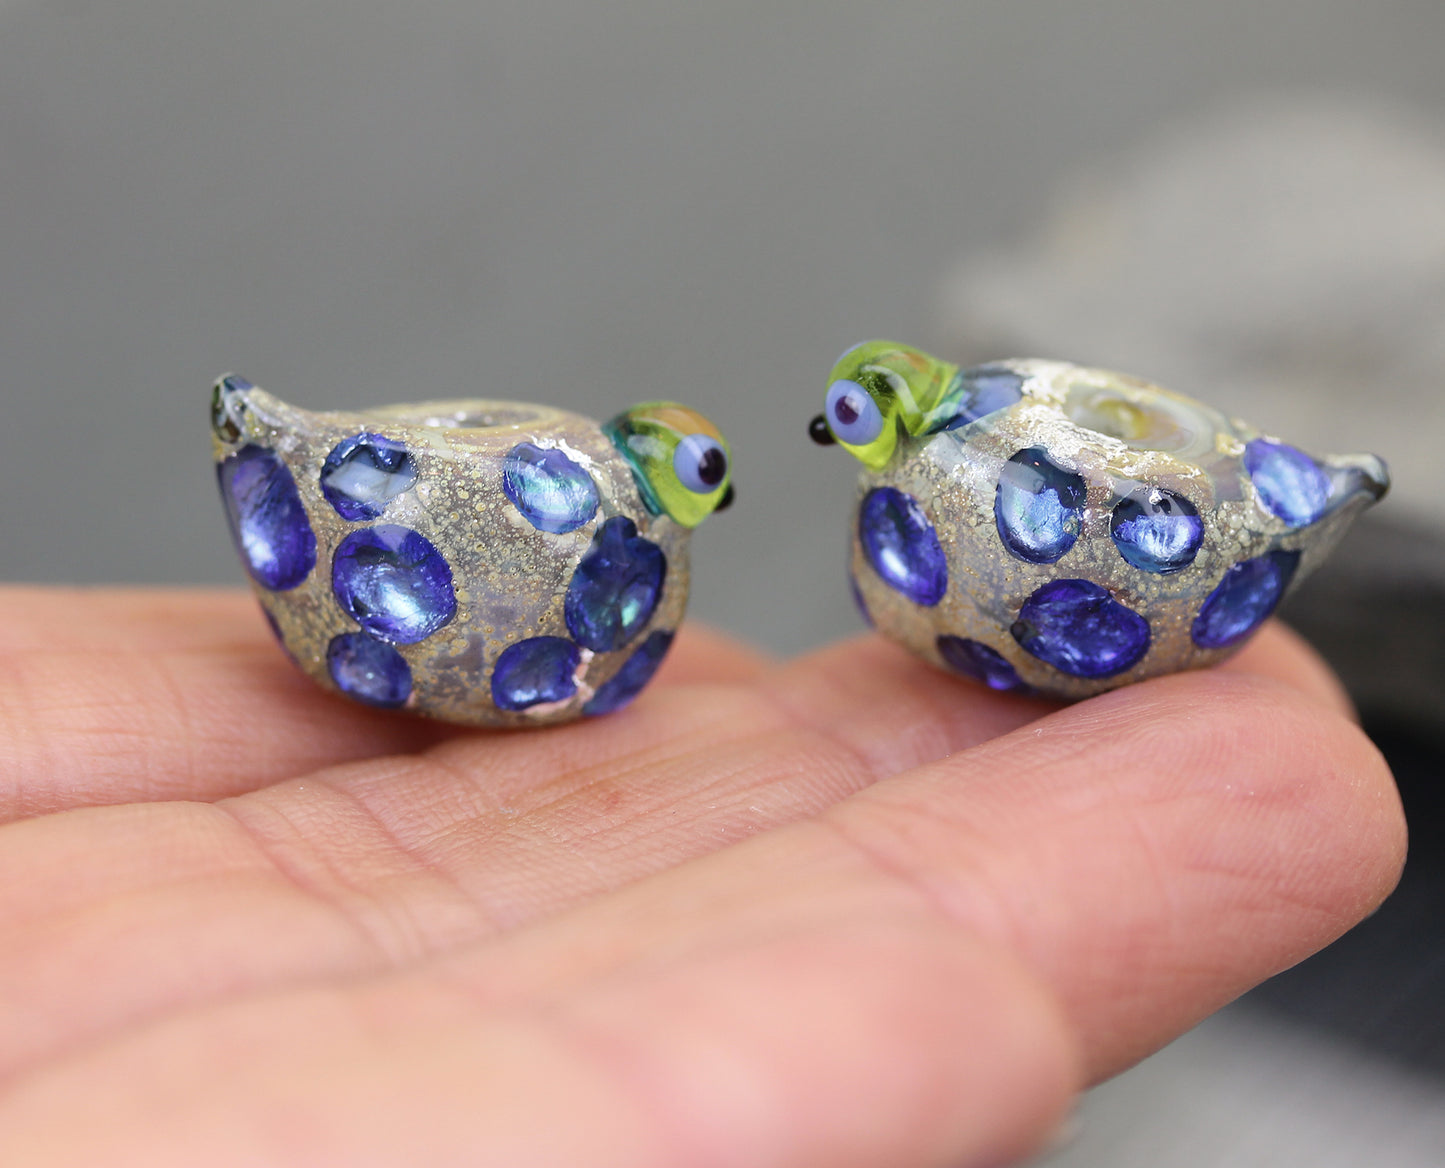 Pair of lavender blue Sea Rocks birdies #124202